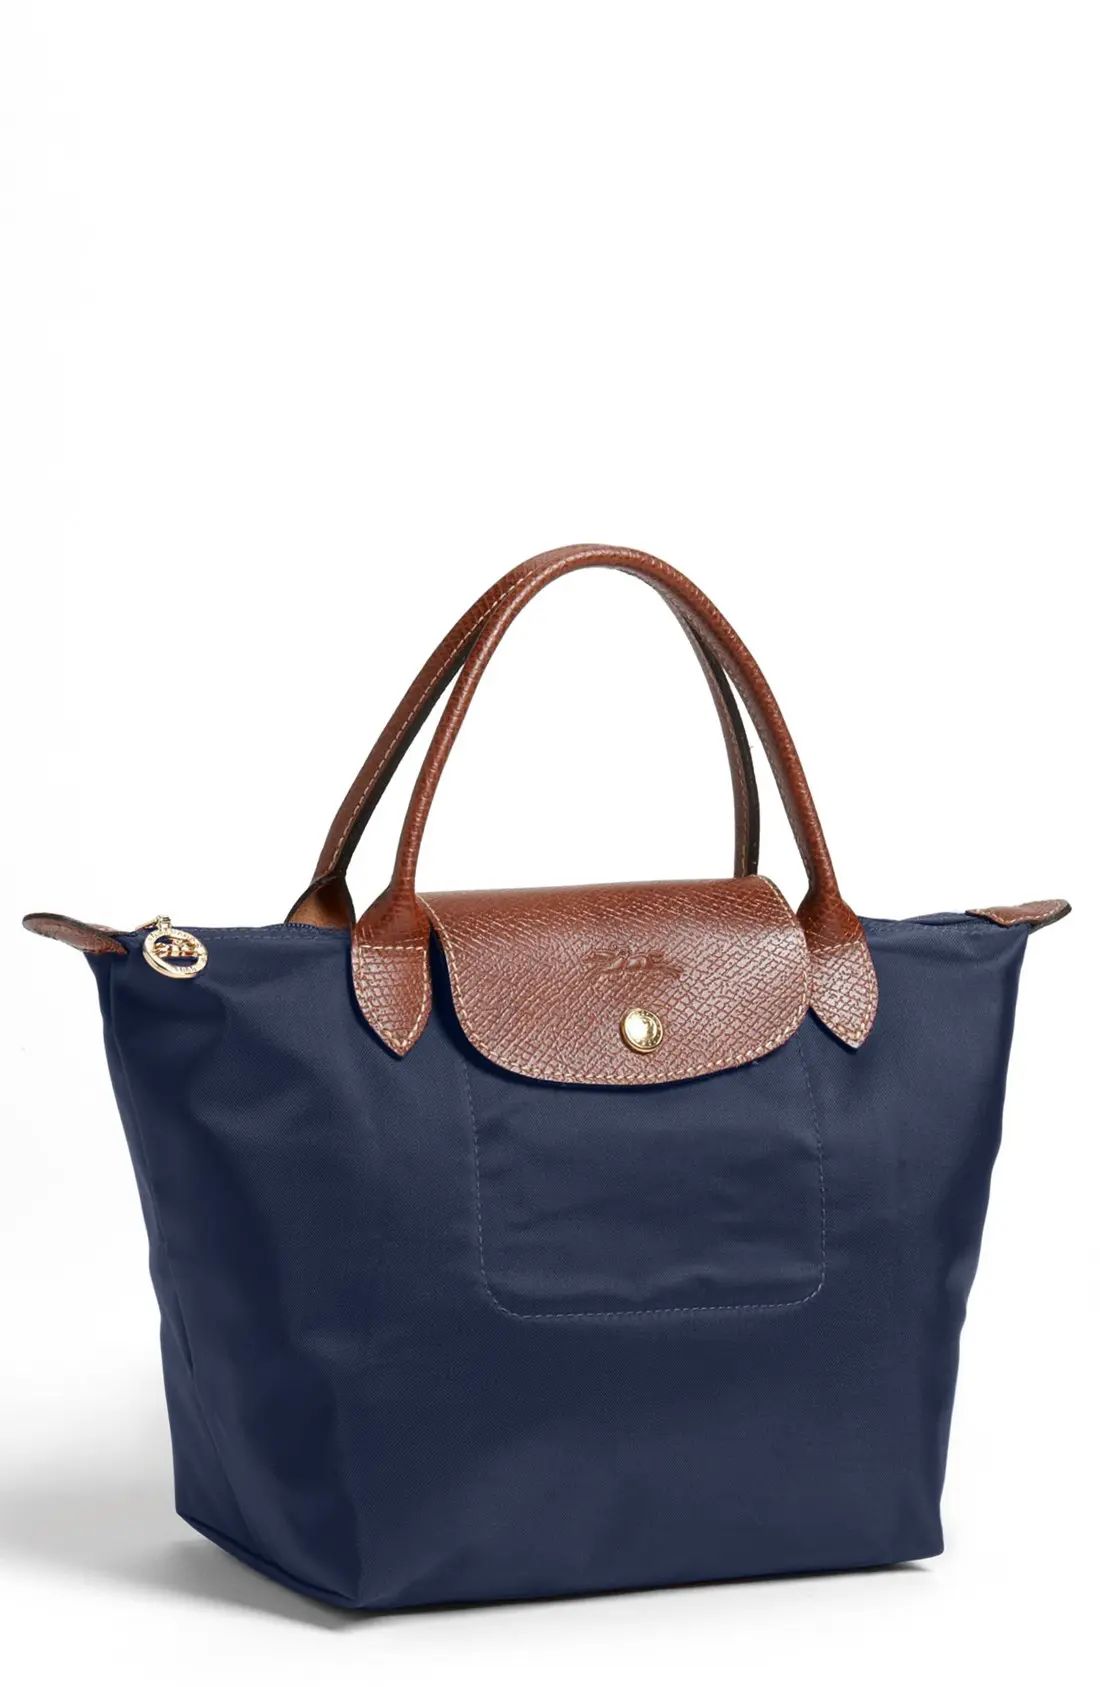 'Mini Le Pliage' Handbag | Nordstrom